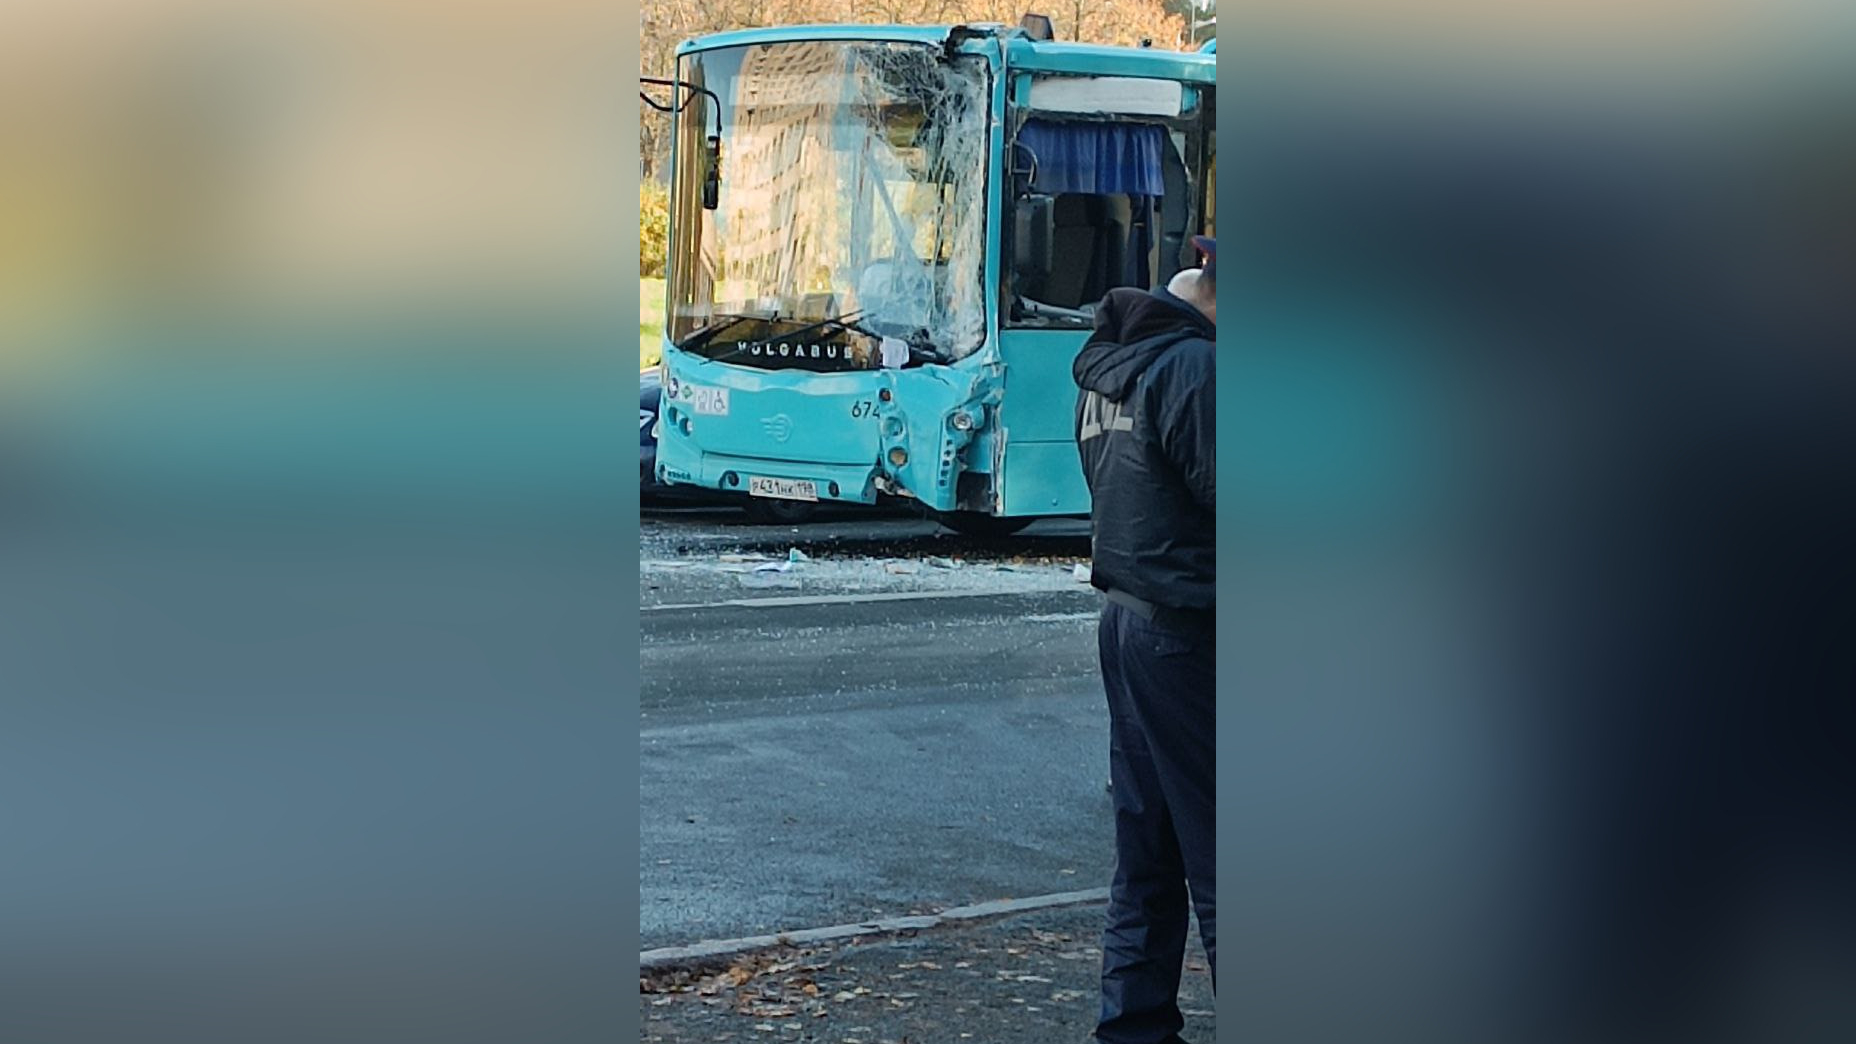 ДТП собрало пробку из общественного транспорта на Бестужевской